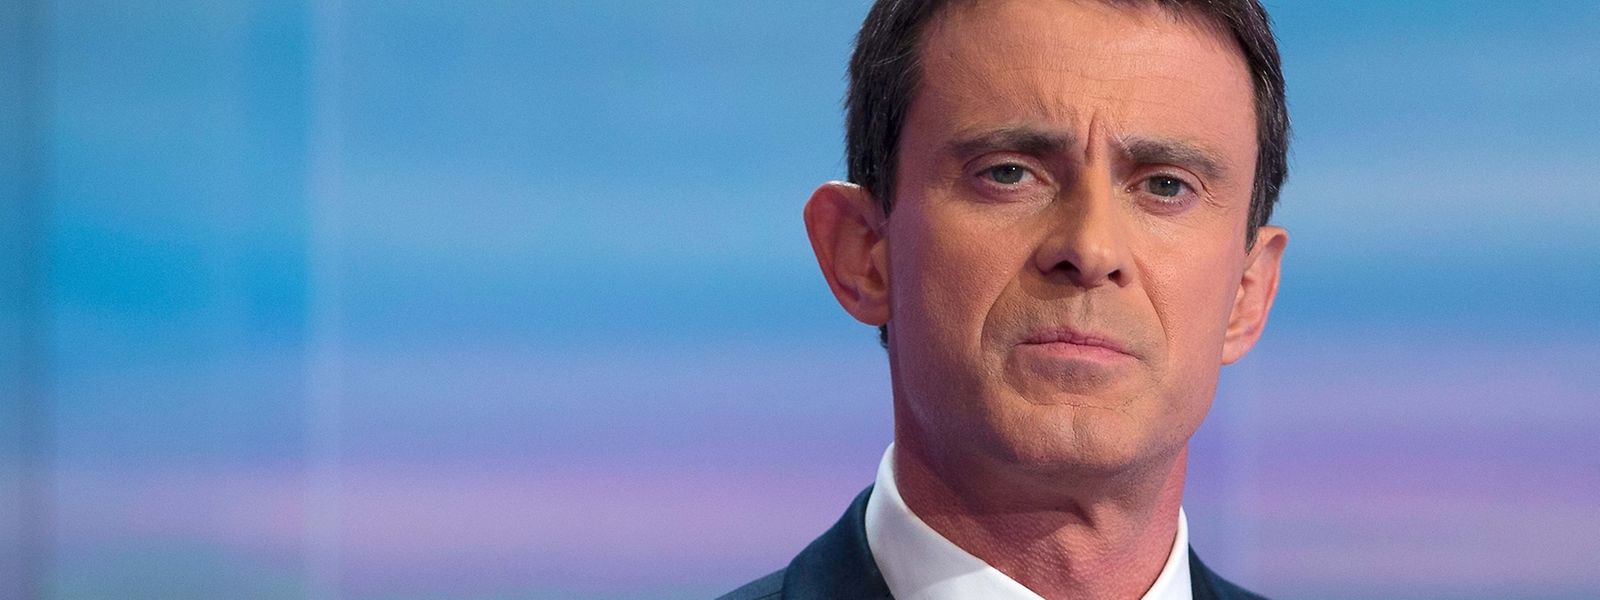 O primeiro-ministro francês Manuel Valls (PS) apelou os socialistas a votarem nos partidos da direita – Les Républicains, MoDem e UDI – para impedir a Frente Nacional de vencer as eleições no domingo 